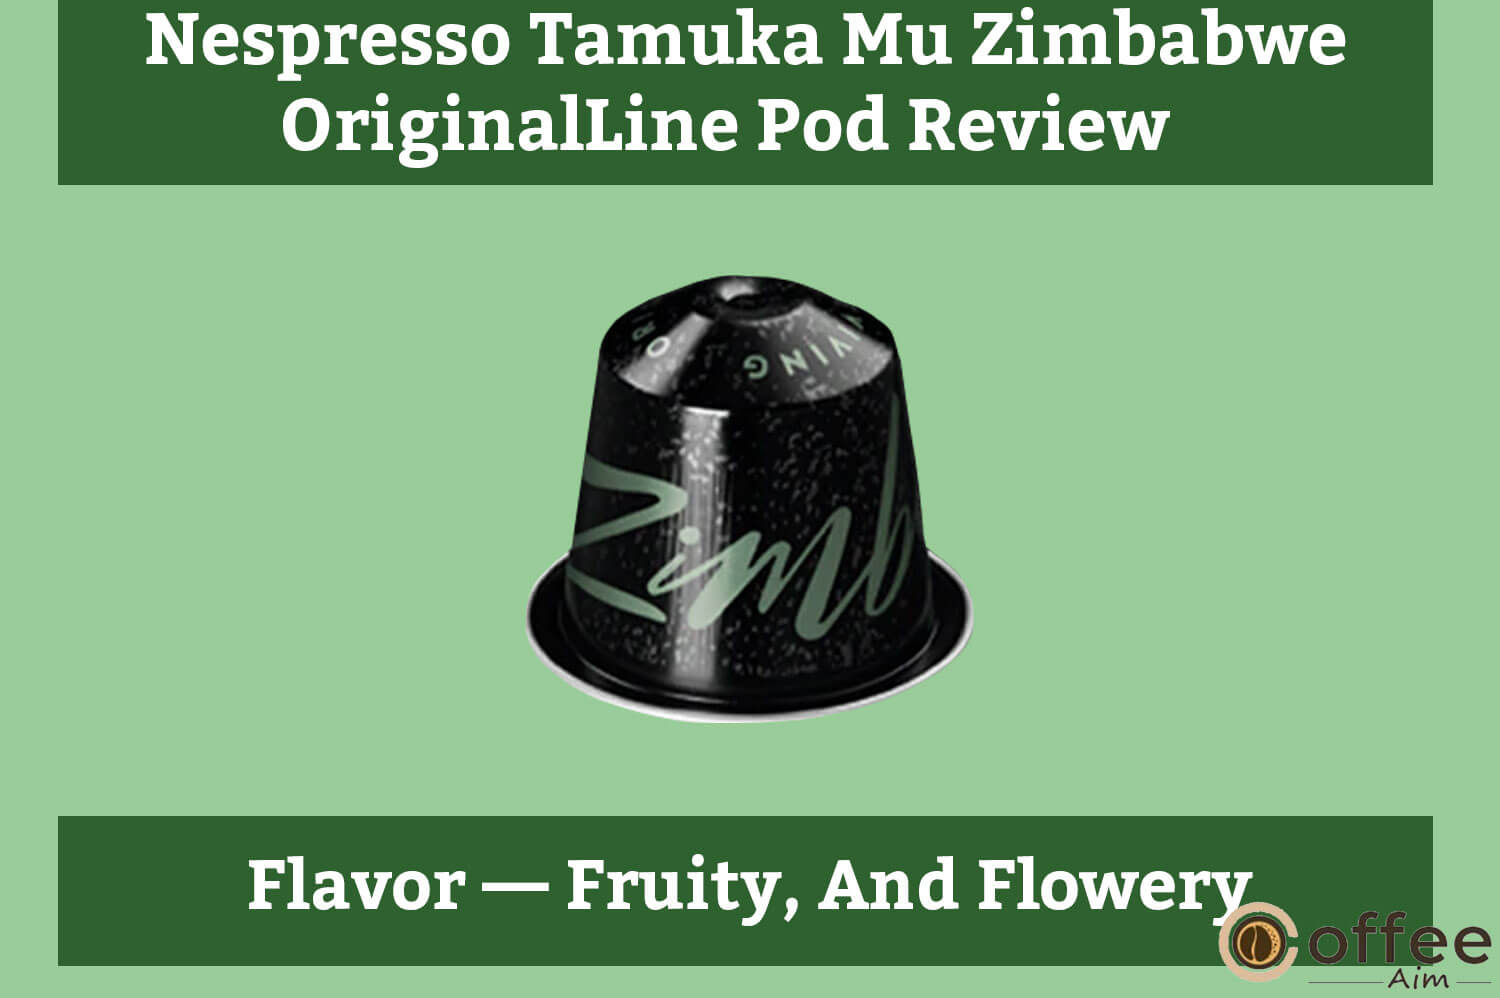 The image depicts the flavor profile of "Nespresso Tamuka Mu Zimbabwe OriginalLine Pod" discussed in the article "Nespresso Tamuka Mu Zimbabwe OriginalLine Pod Review."